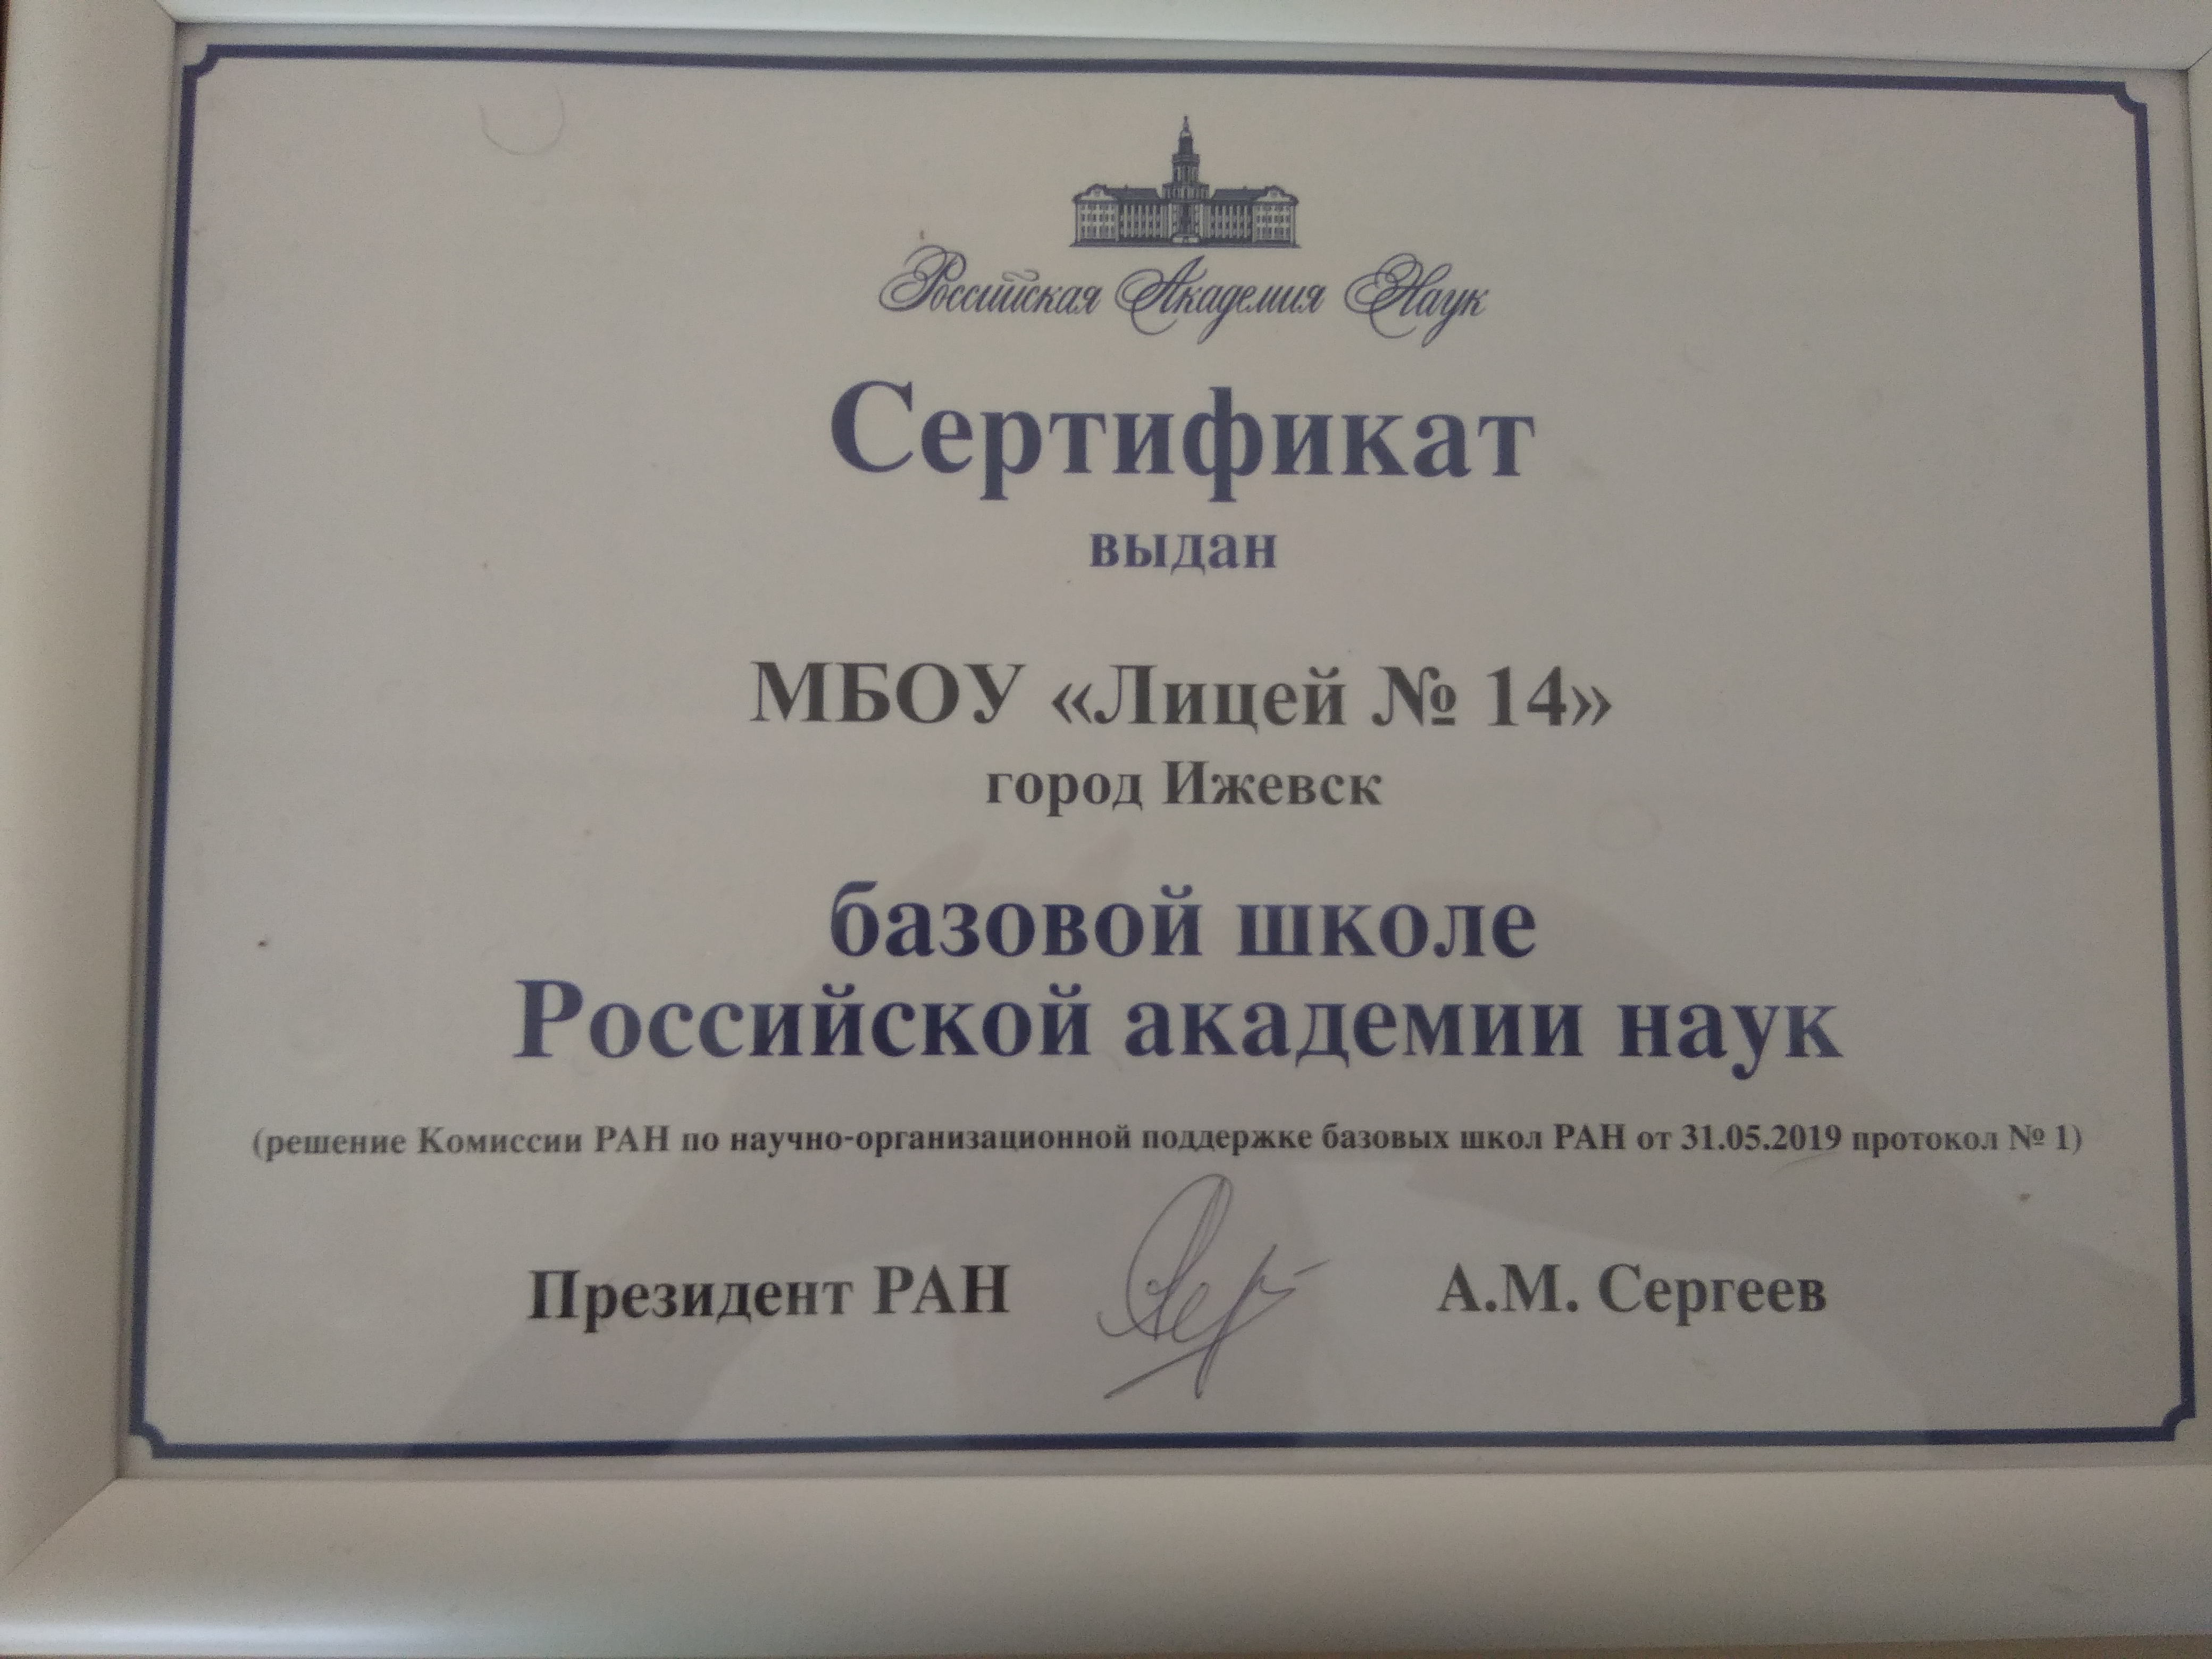 Сертификат базовой школе Российской академии наук.